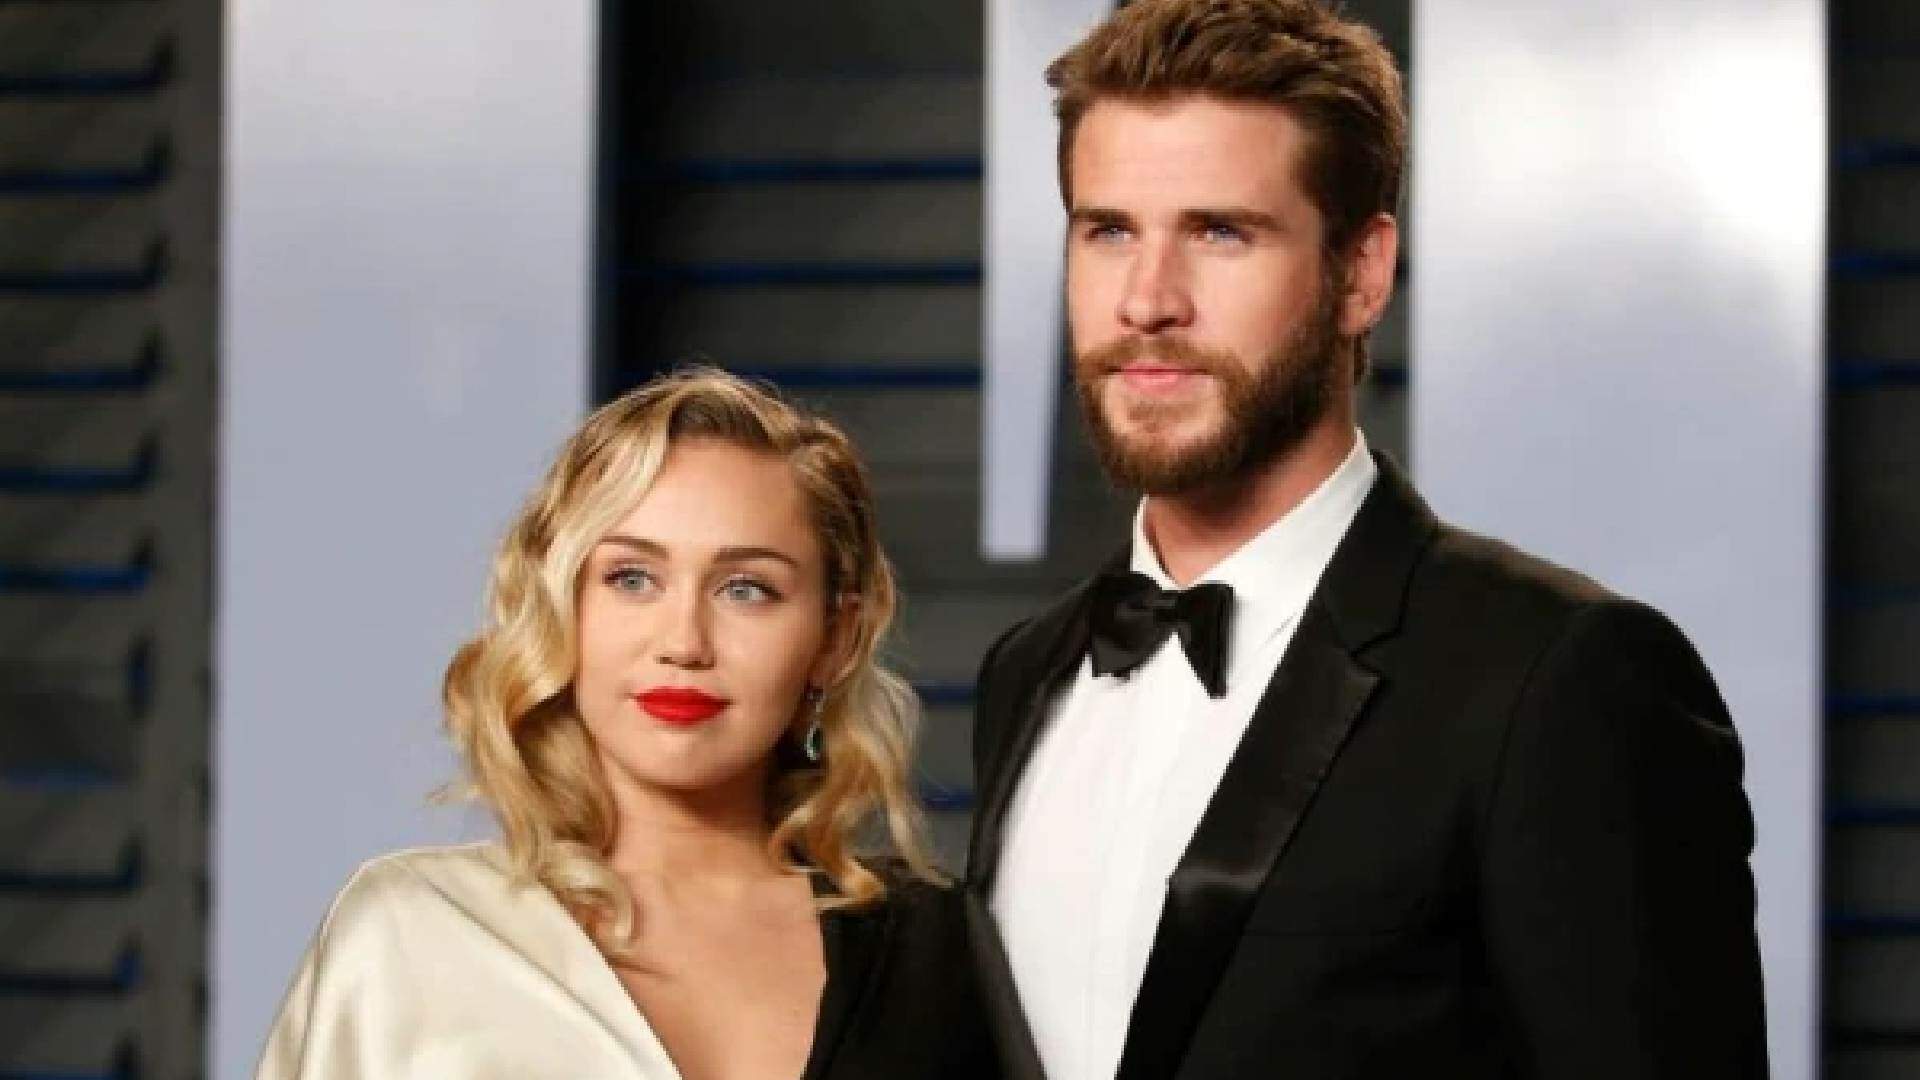 Web relembra divórcio de Miley Cyrus com Liam Hemsworth e artista explica fim do casamento - Metropolitana FM